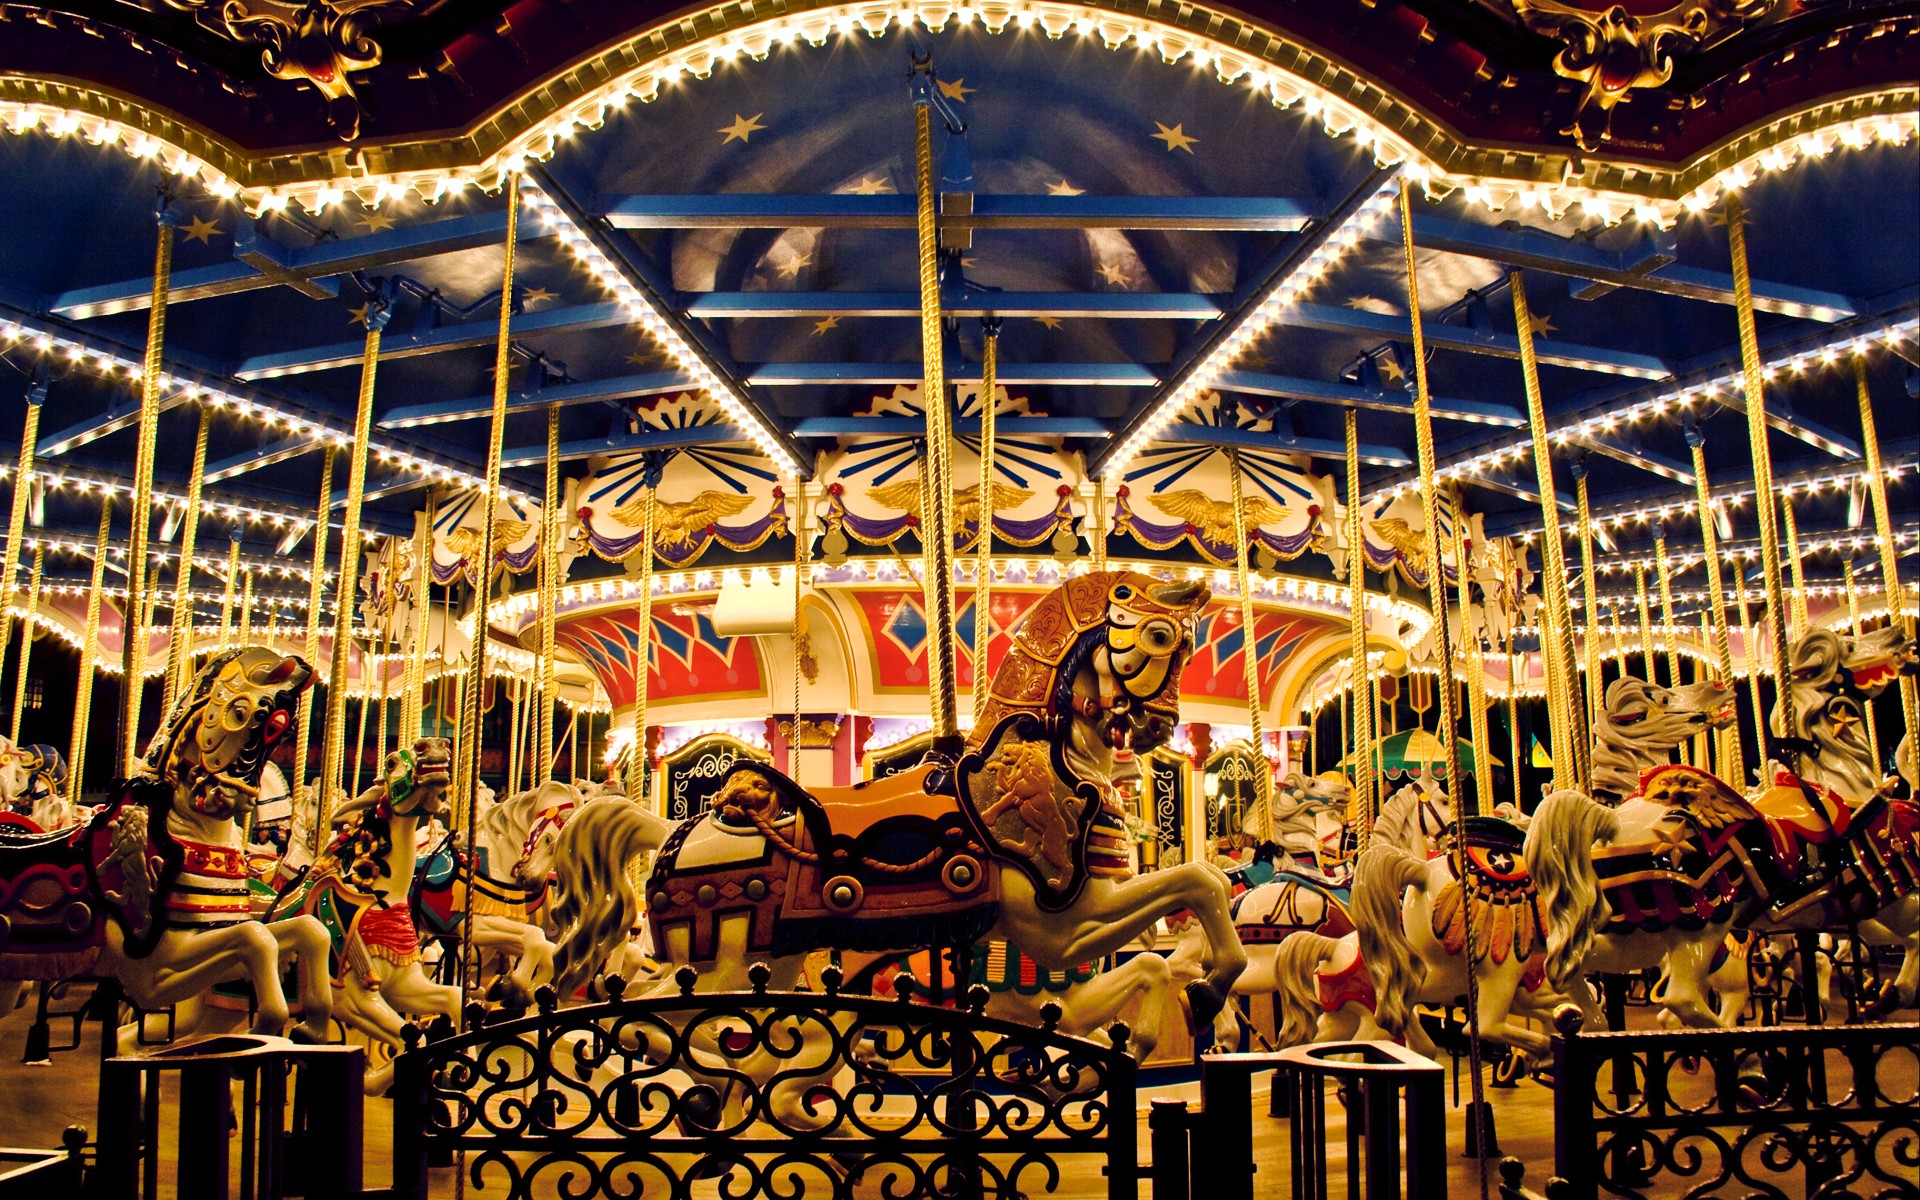 Amusement Park Photos, Download The BEST Free Amusement Park Stock Photos &  HD Images